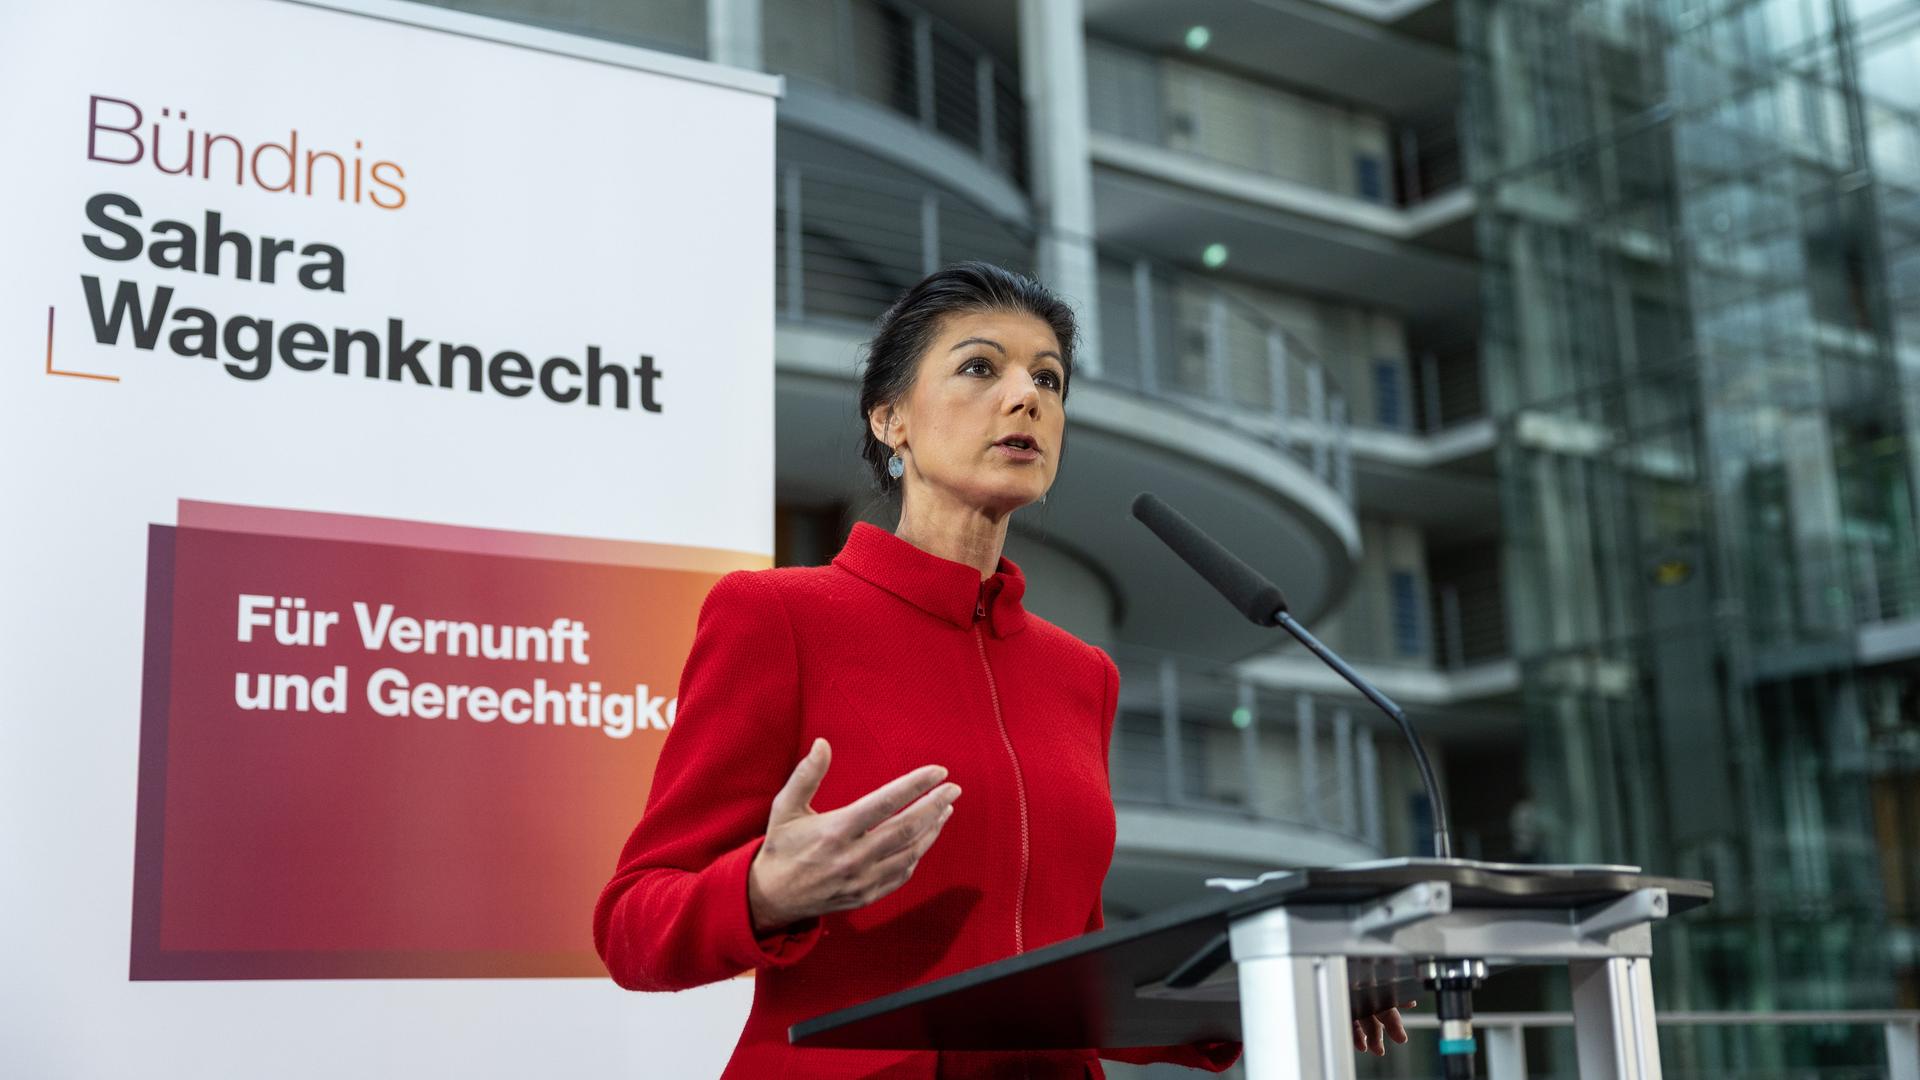 Sahra Wagenknecht, Bundesvorsitzende des Bündnis Sahra Wagenknecht (BSW), spricht während eines Pressestatements nach der Sitzung der Bundestagsfraktion.